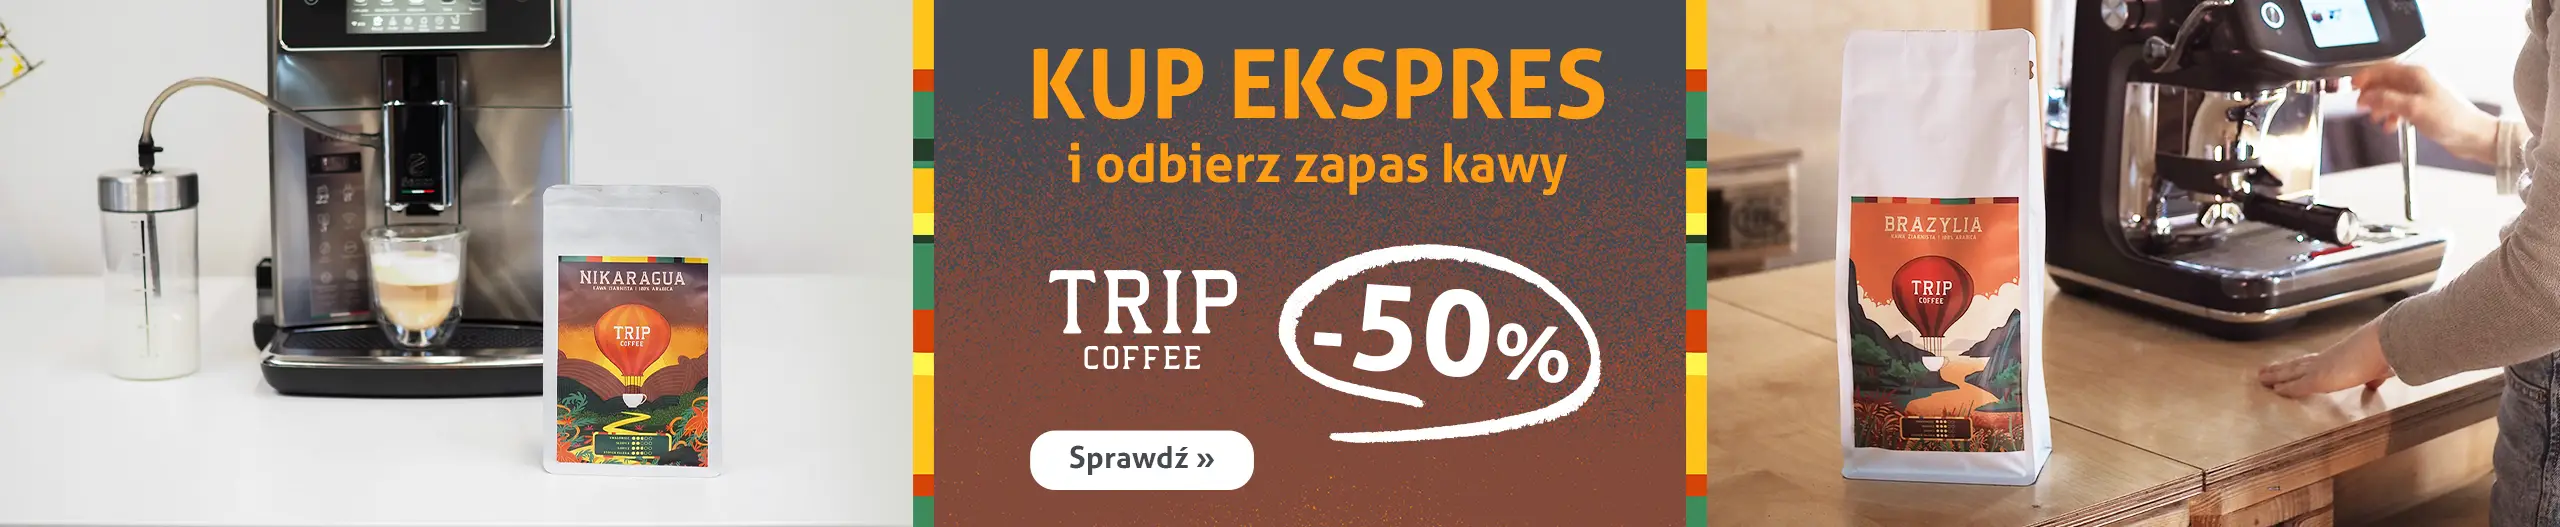 Kup ekspres i odbierz kawy TRIP COFFEE za pół ceny